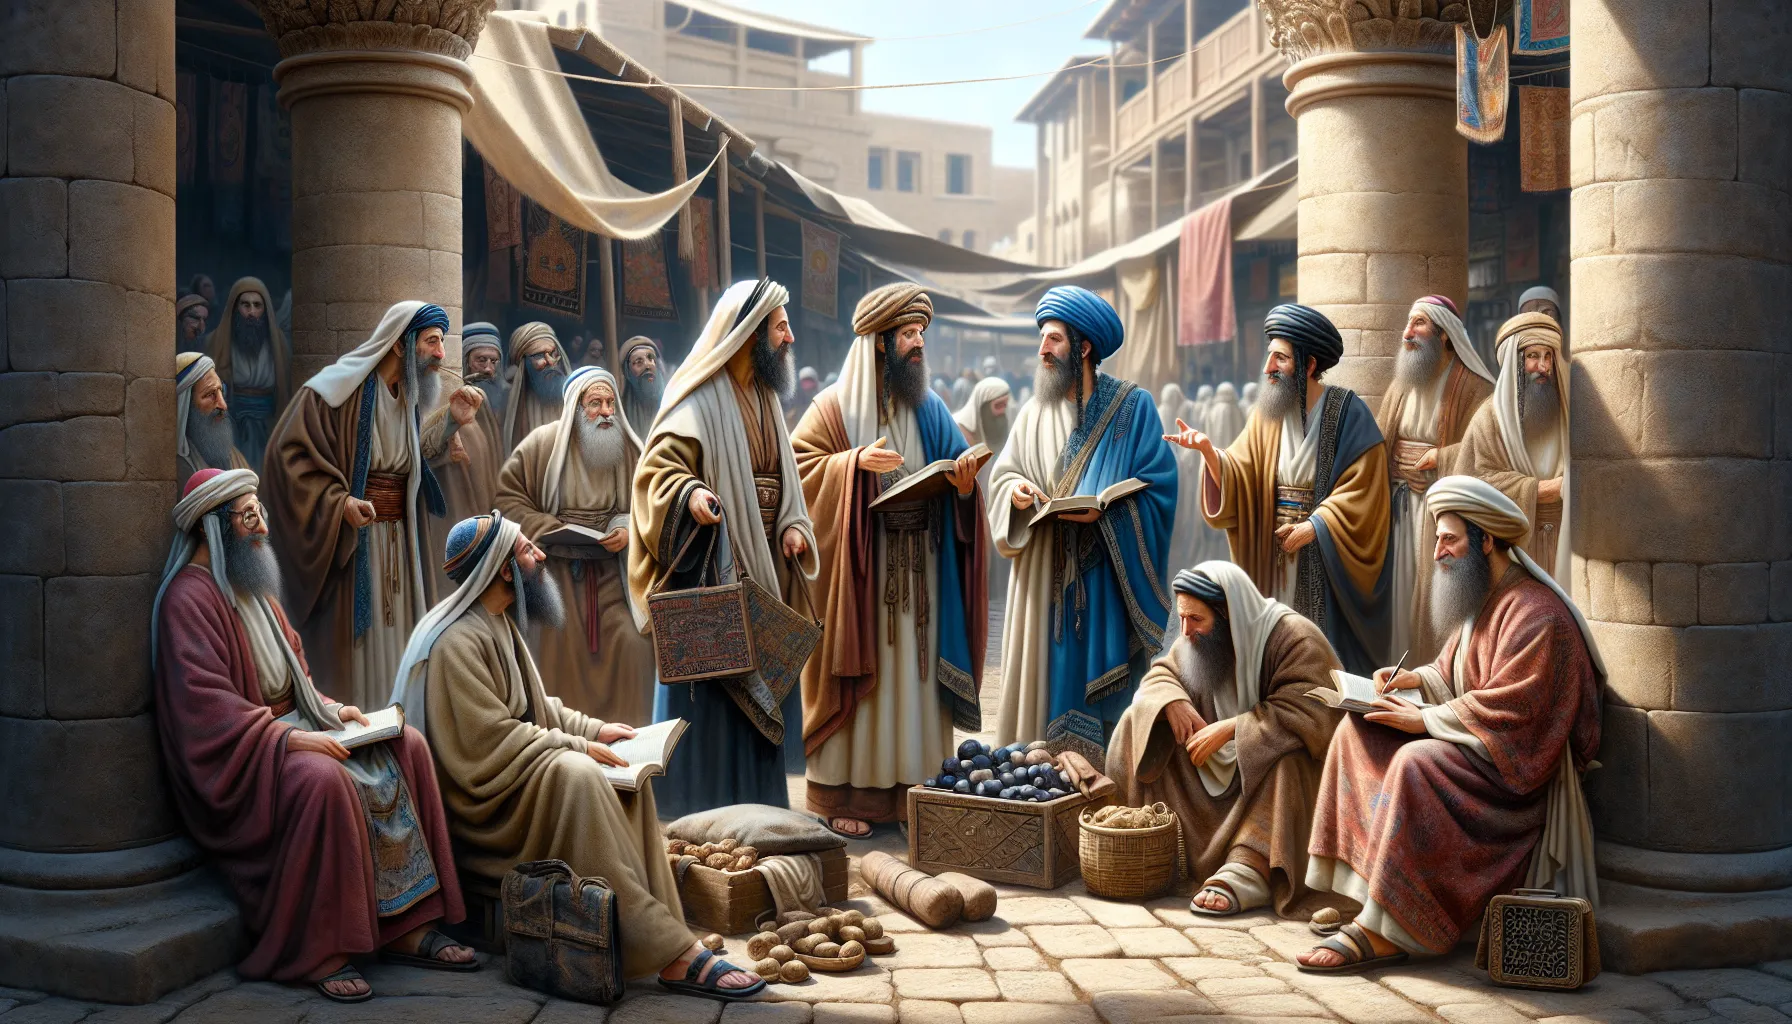 Representación de fariseos y saduceos en una ilustración que explora su papel en la antigua sociedad judía.